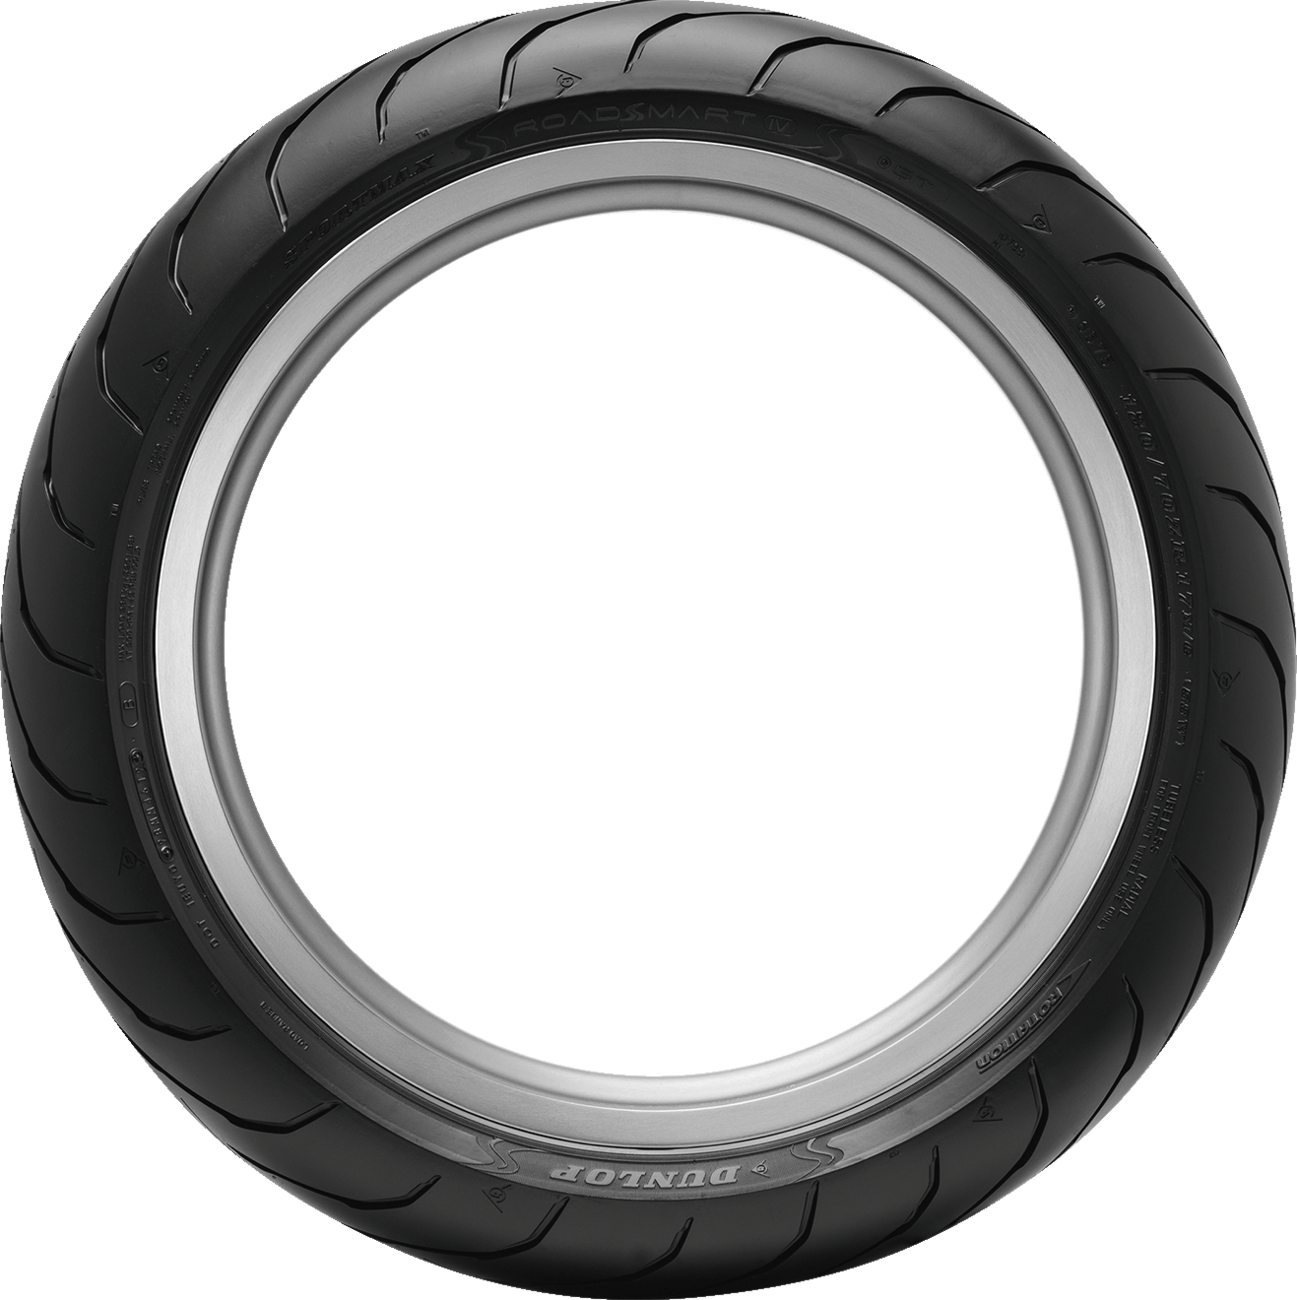 DUNLOP Tire - Sportmax® Roadsmart IV - Front - 120/70ZR17 - (58W) 45253301